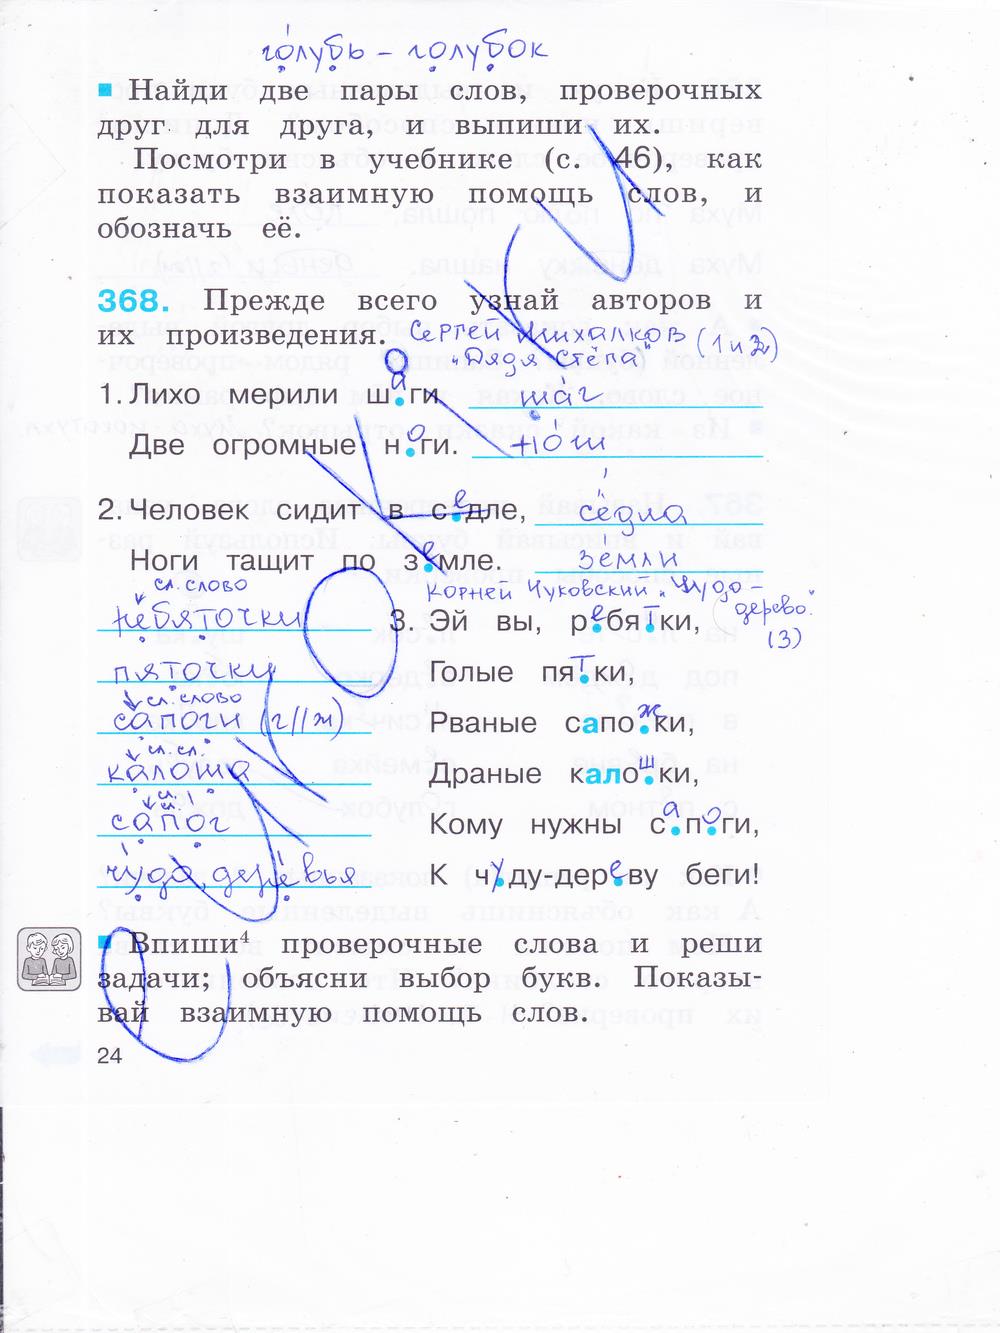 гдз 2 класс рабочая тетрадь часть 2 страница 24 русский язык Соловейчик, Кузьменко